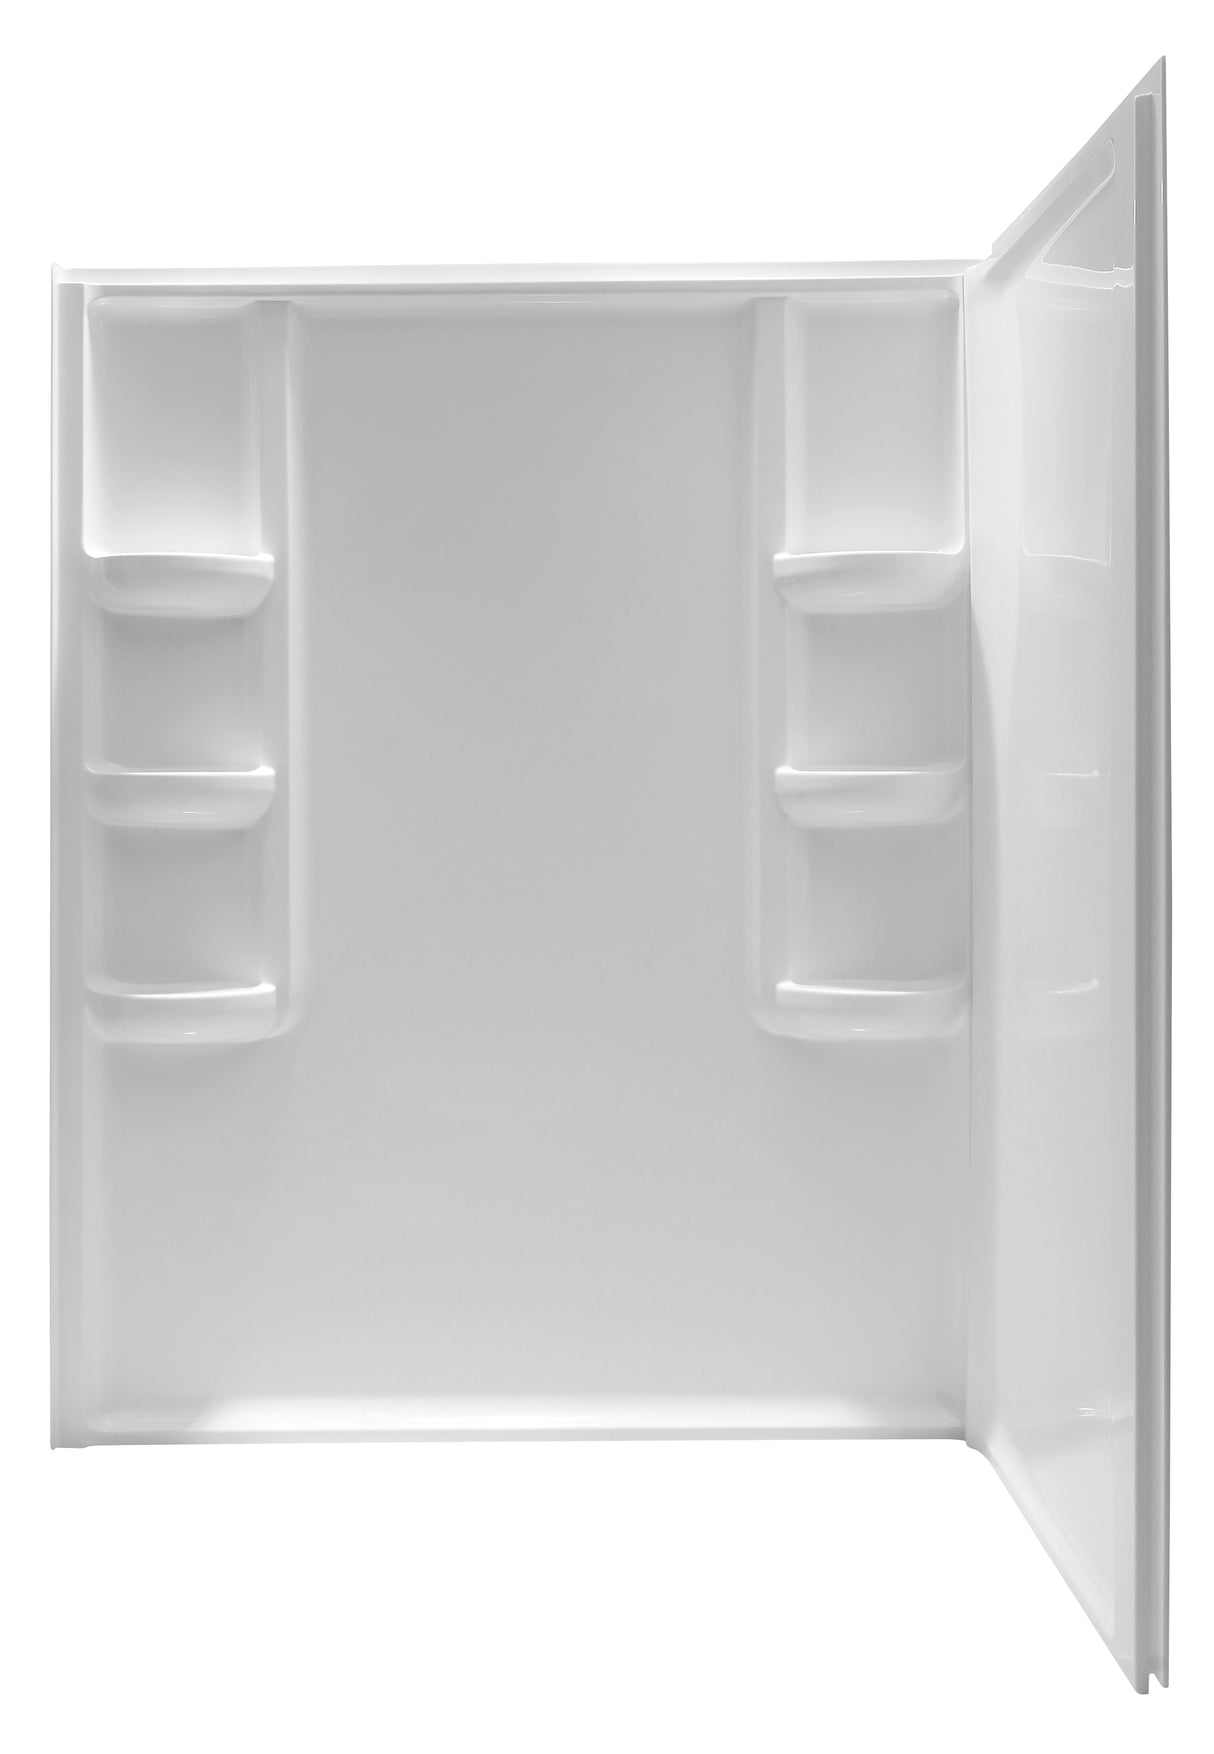 ANZZI SW-AZ8072-R 60 in. x 36 in. x 74 in. 2-piece DIY Friendly Corner Shower Surround in White